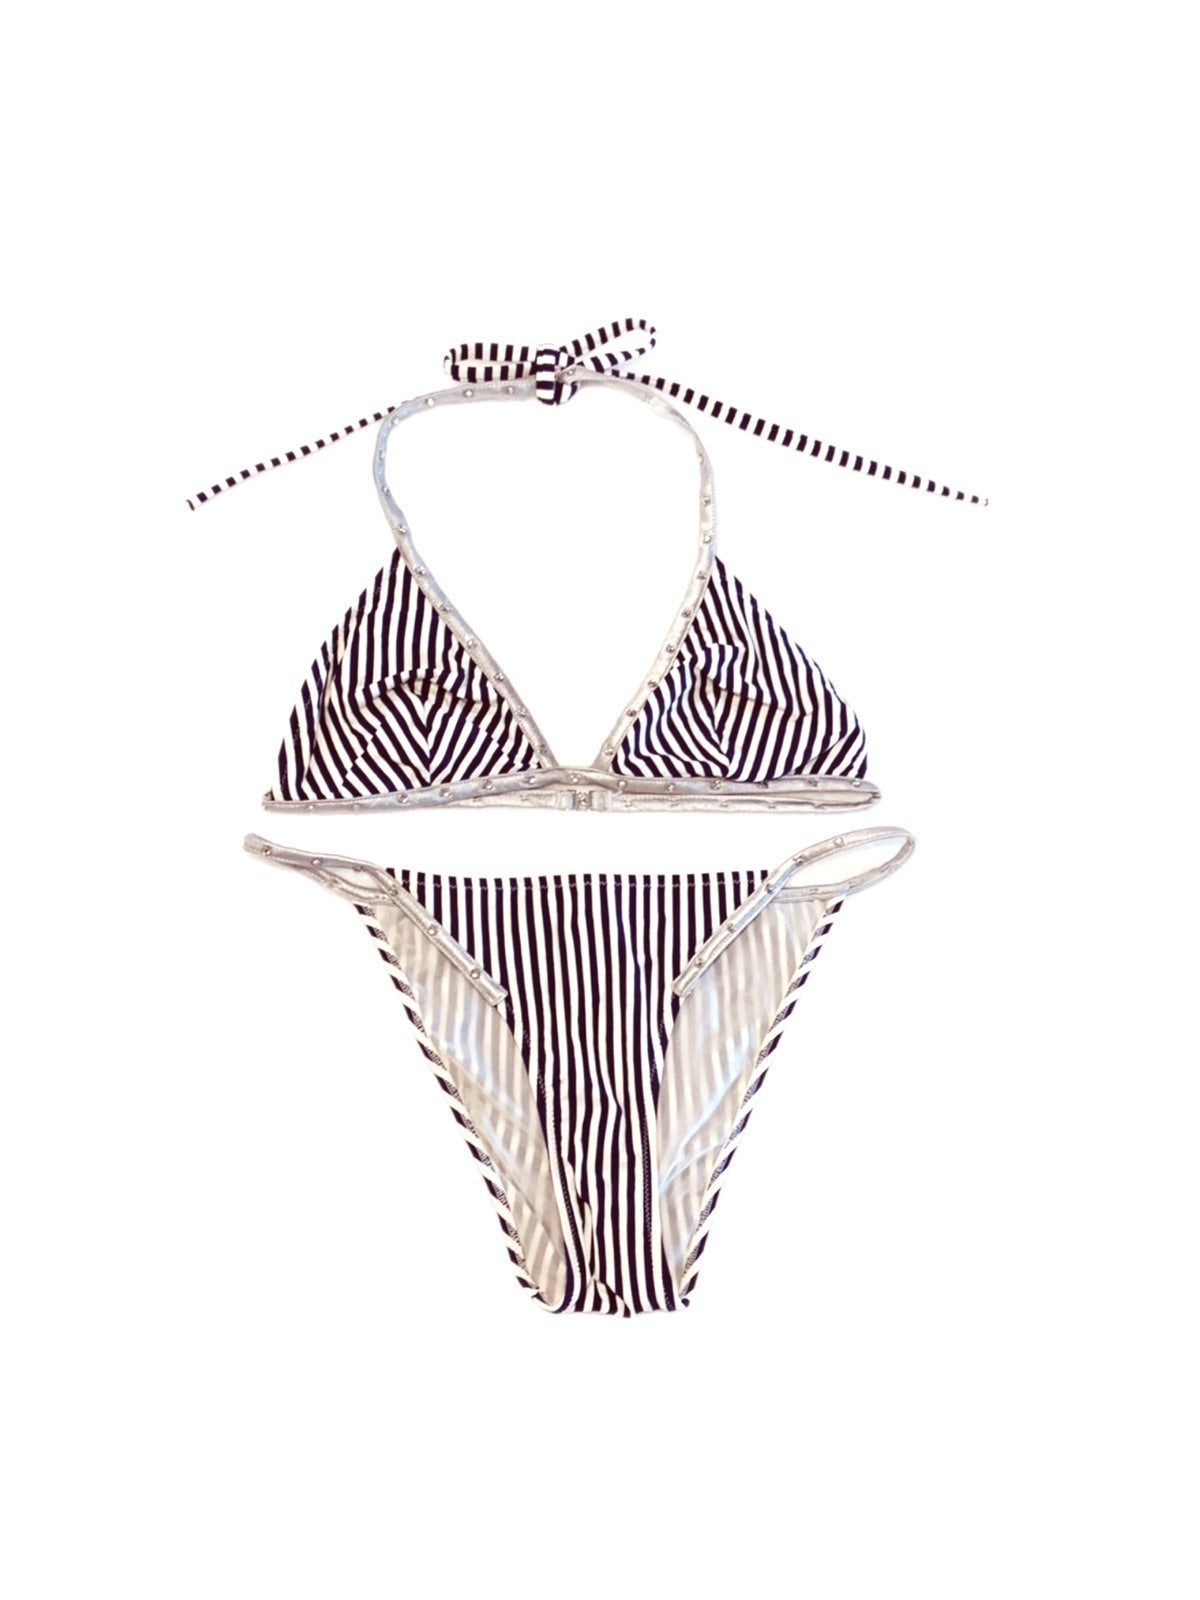 D&G striped bikini set w/ rhinestones